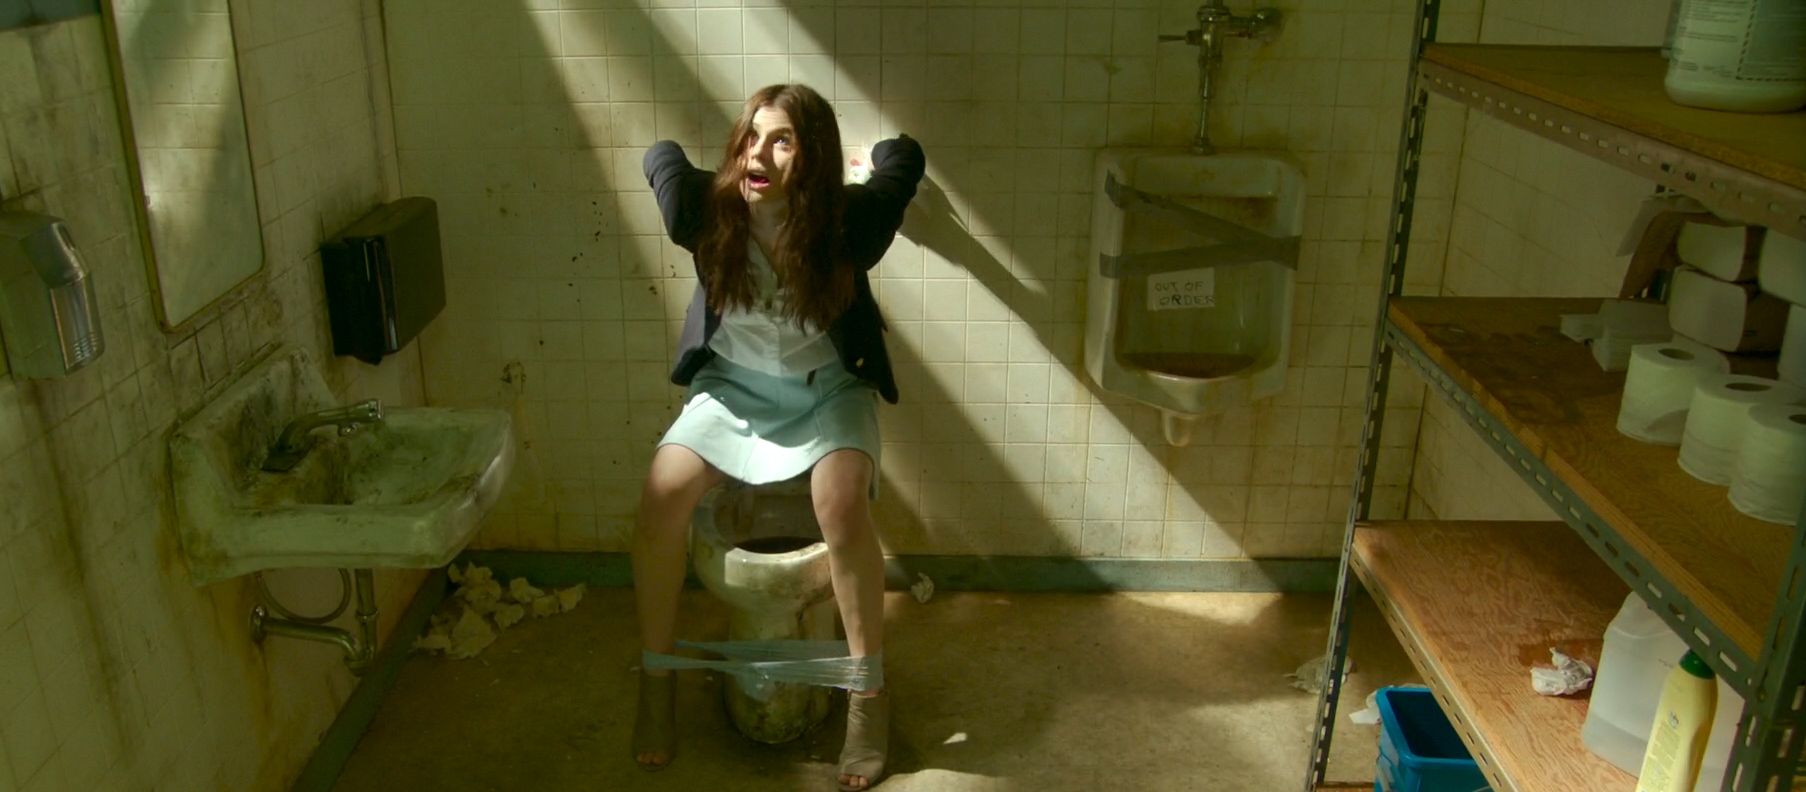 Alexandra Daddario, Kate Upton - The Layover 1080p (12).jpg